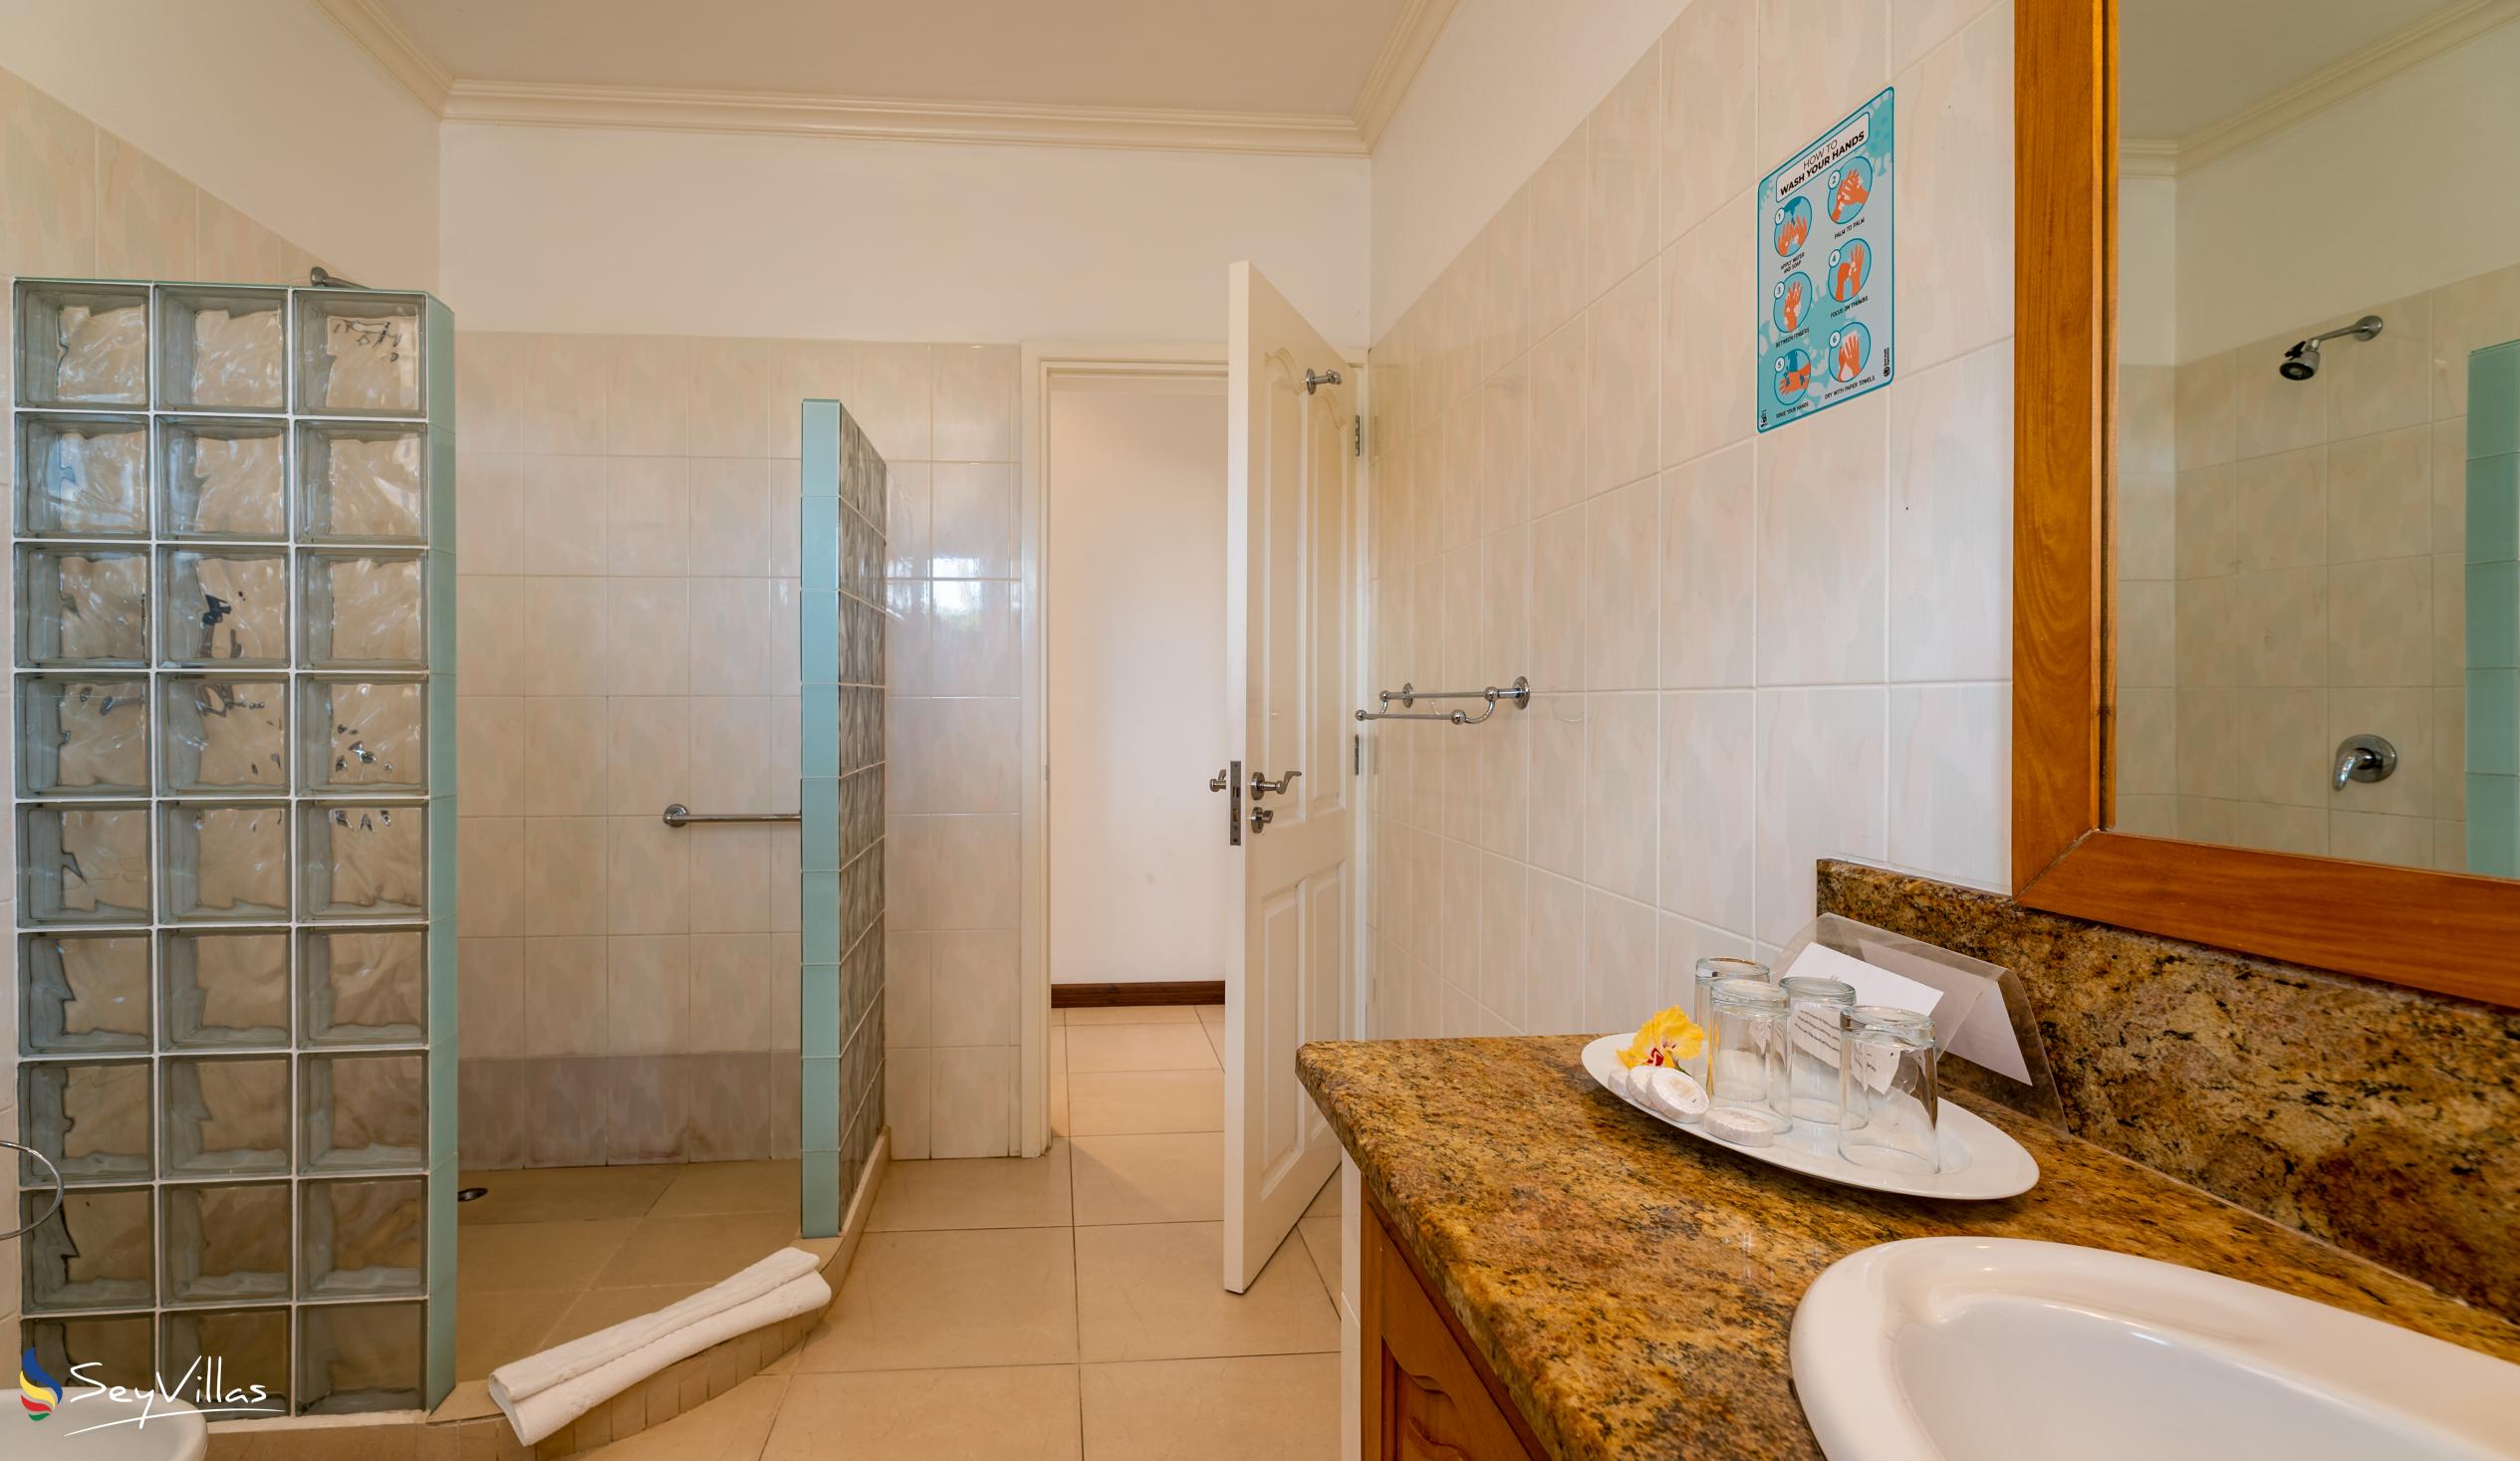 Photo 113: Marie-Laure Suites - 2-Bedroom Apartment - Mahé (Seychelles)